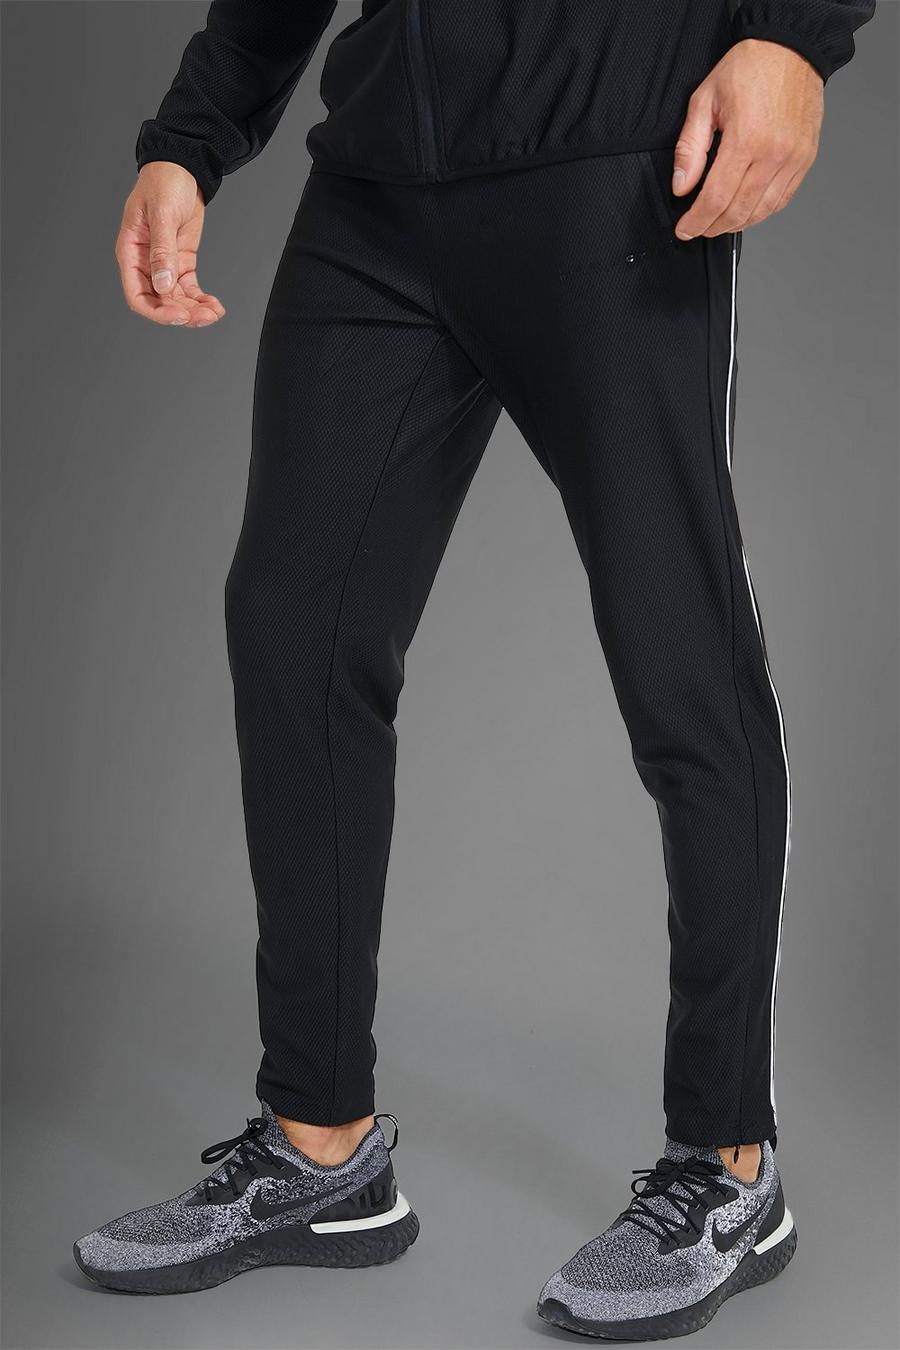 Pantaloni tuta Man Active Gym con cordoncino riflettente, Black nero